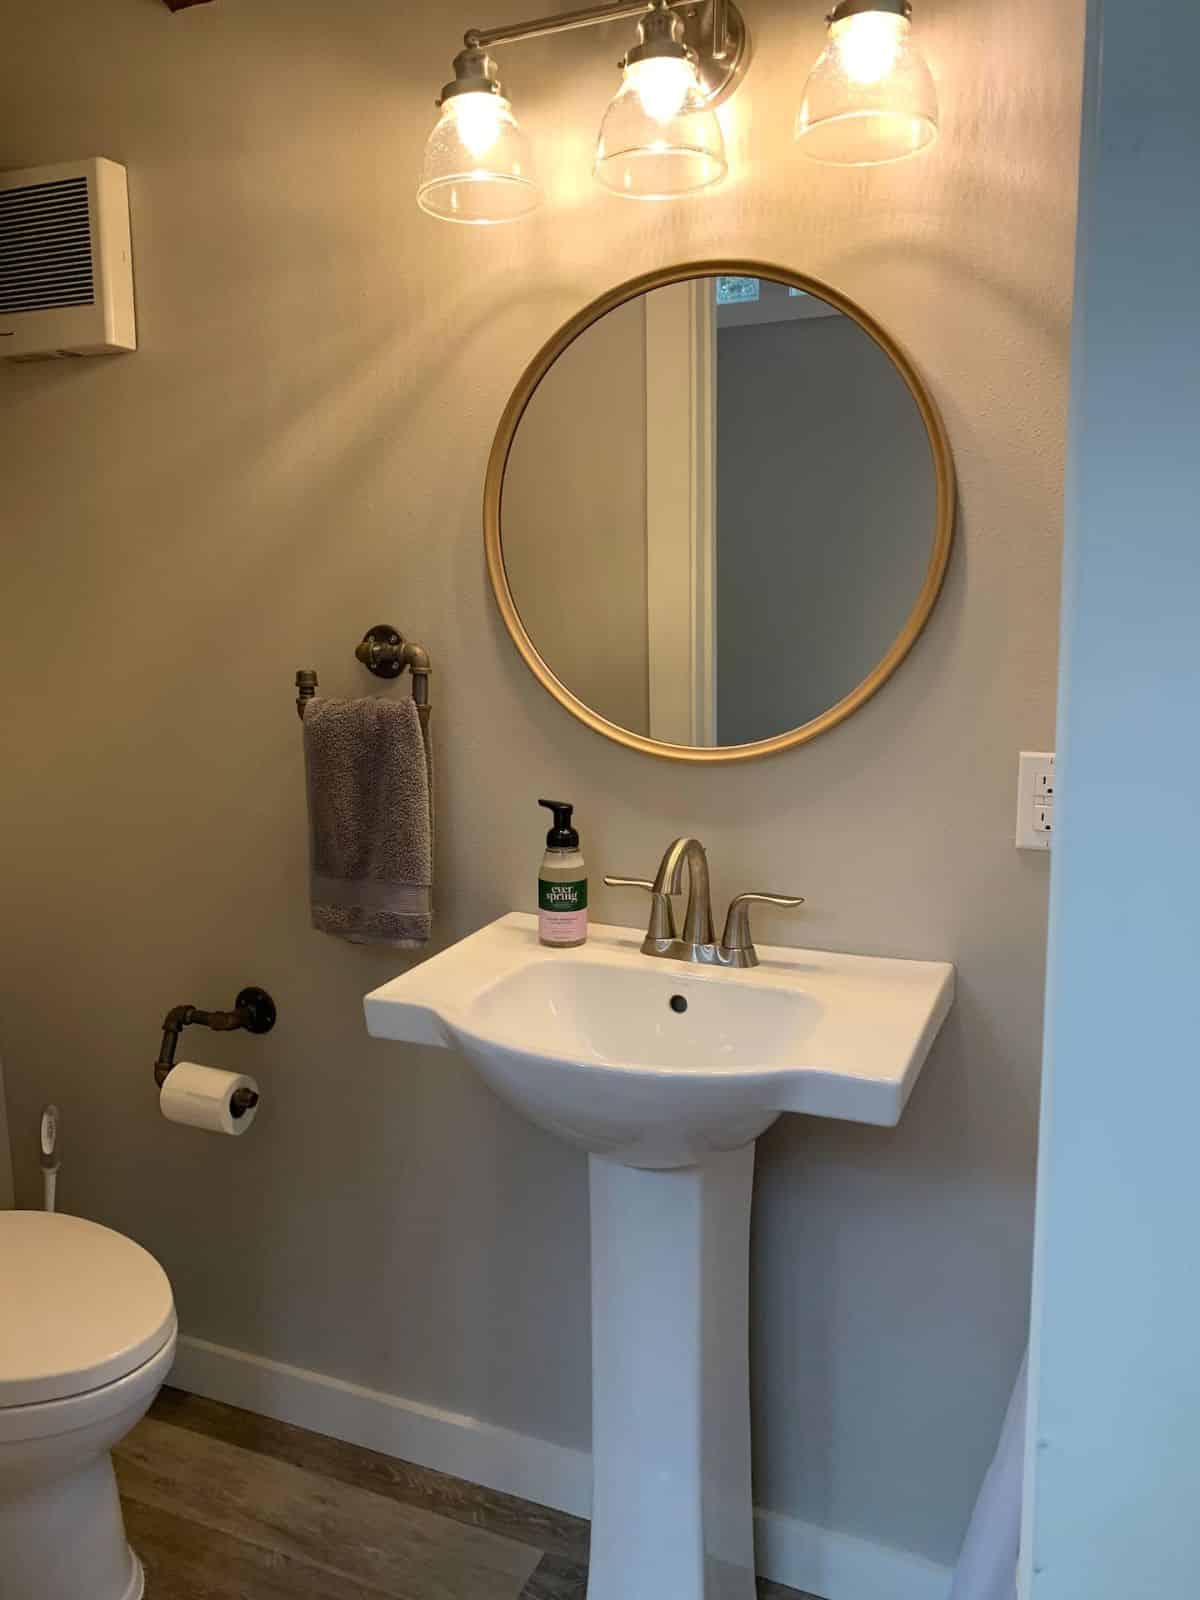 white pedestal sink under round mirror